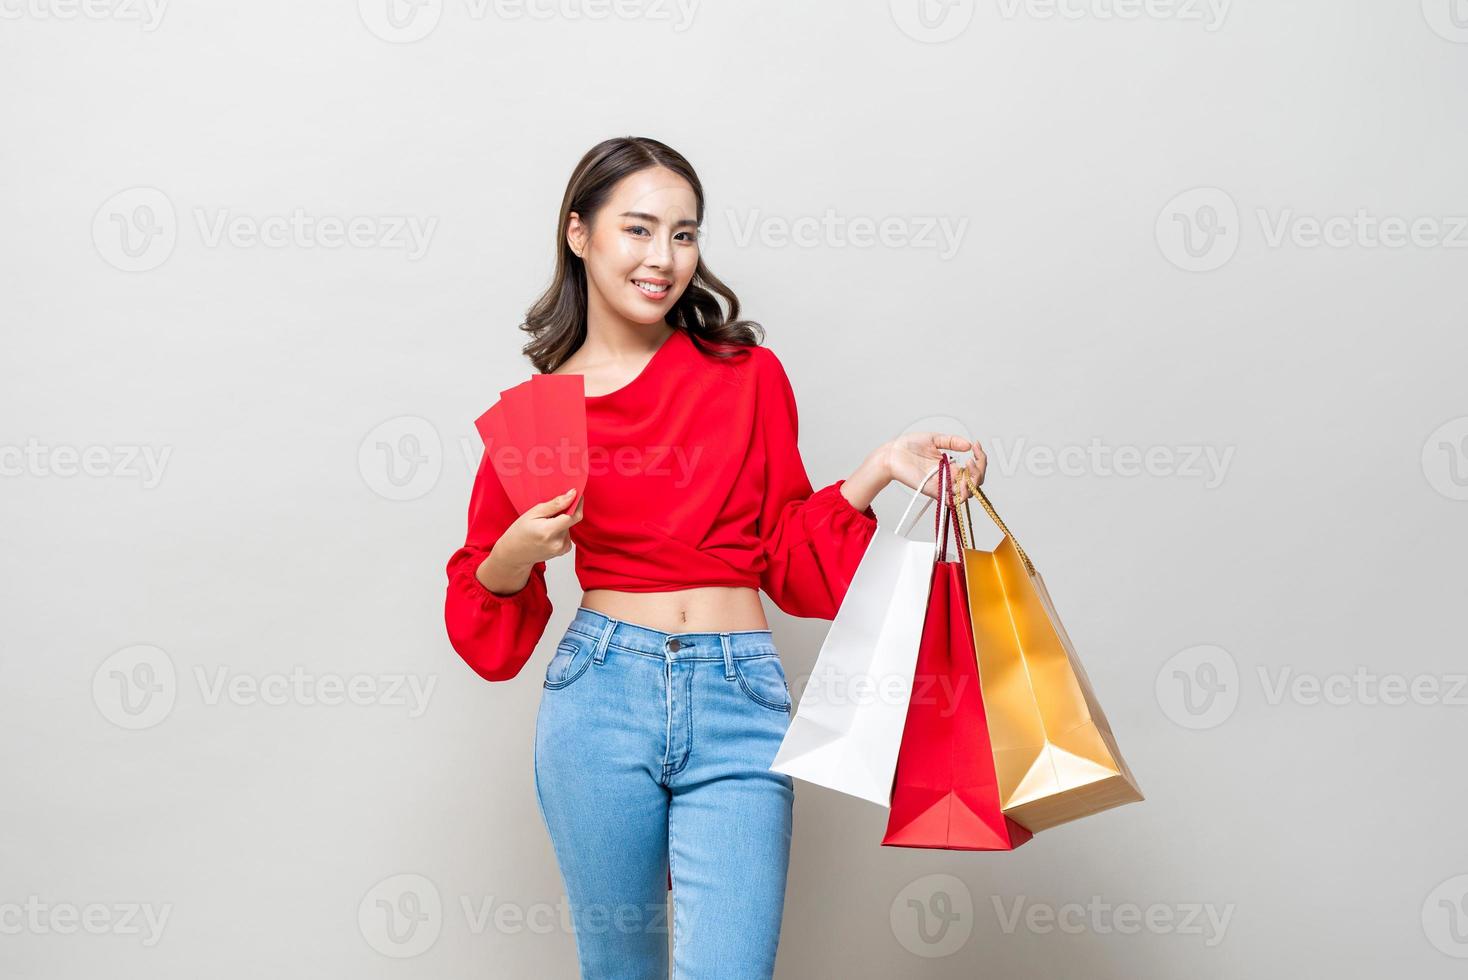 donna asiatica felice che tiene borse della spesa e buste rosse o ang pao isolato in uno sfondo grigio chiaro per il concetto di vendita di capodanno cinese foto